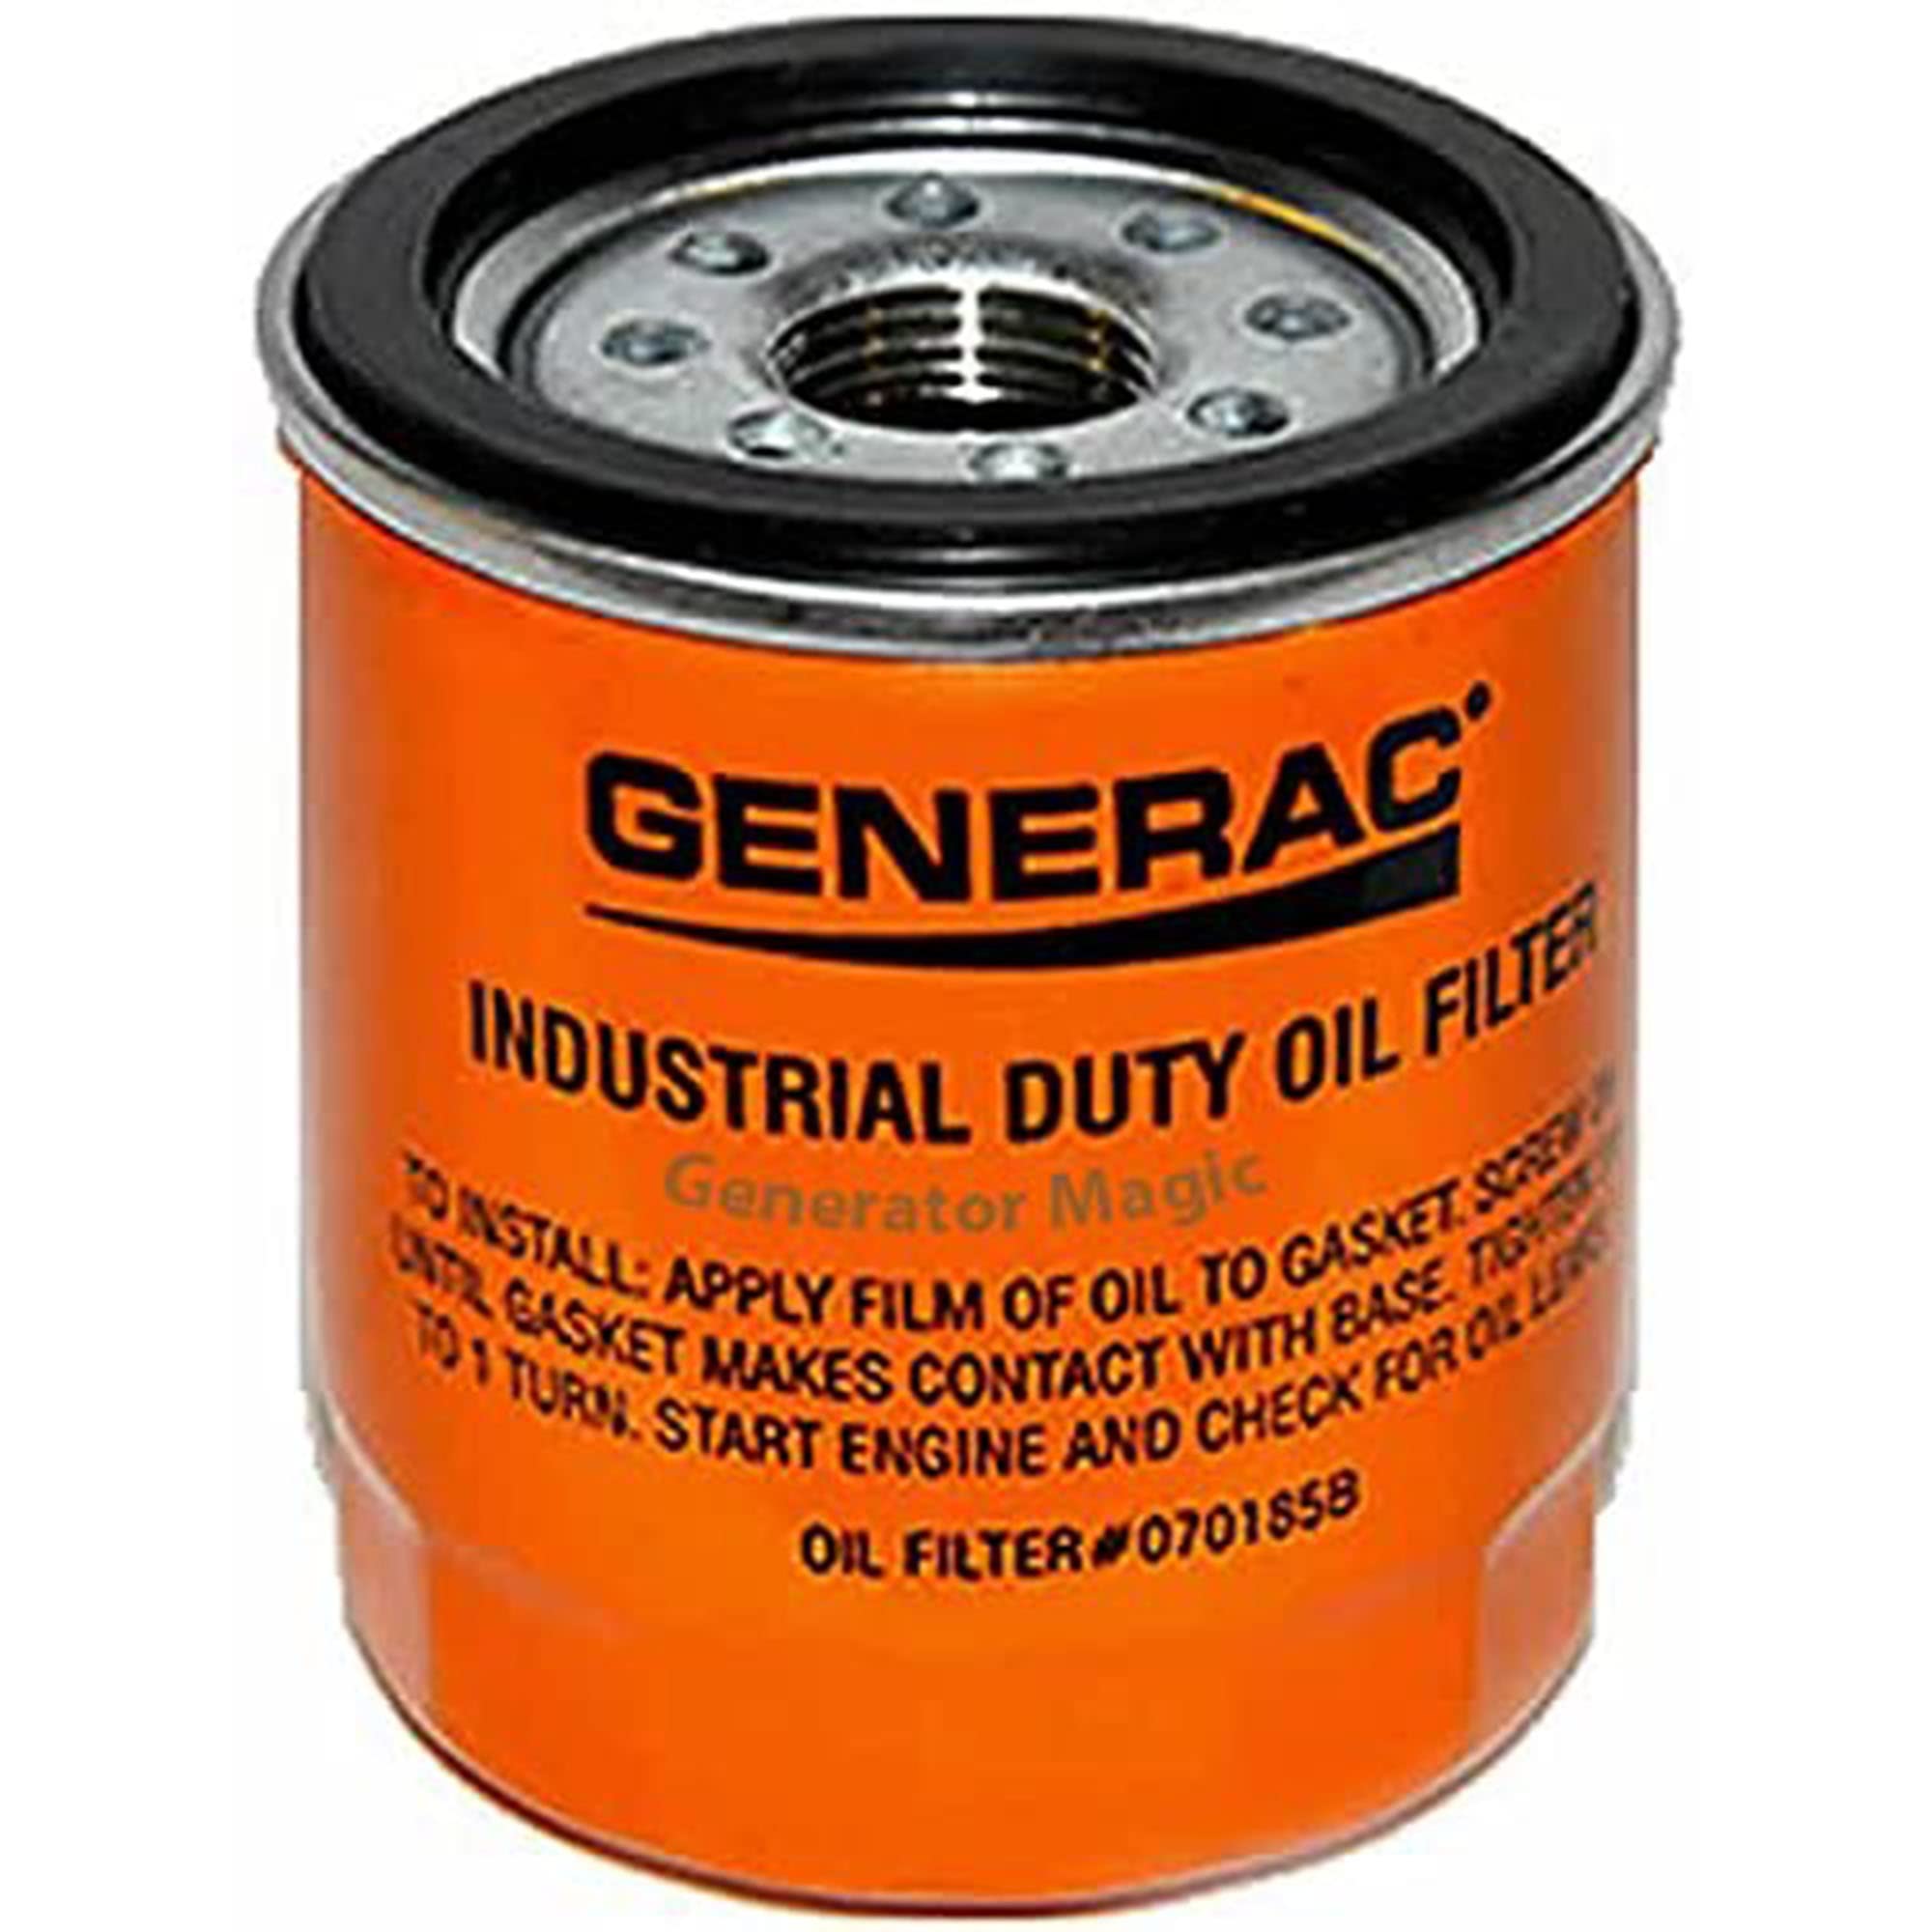 Generac Genuine 75mm Oil Filter for Generators / 070185BS